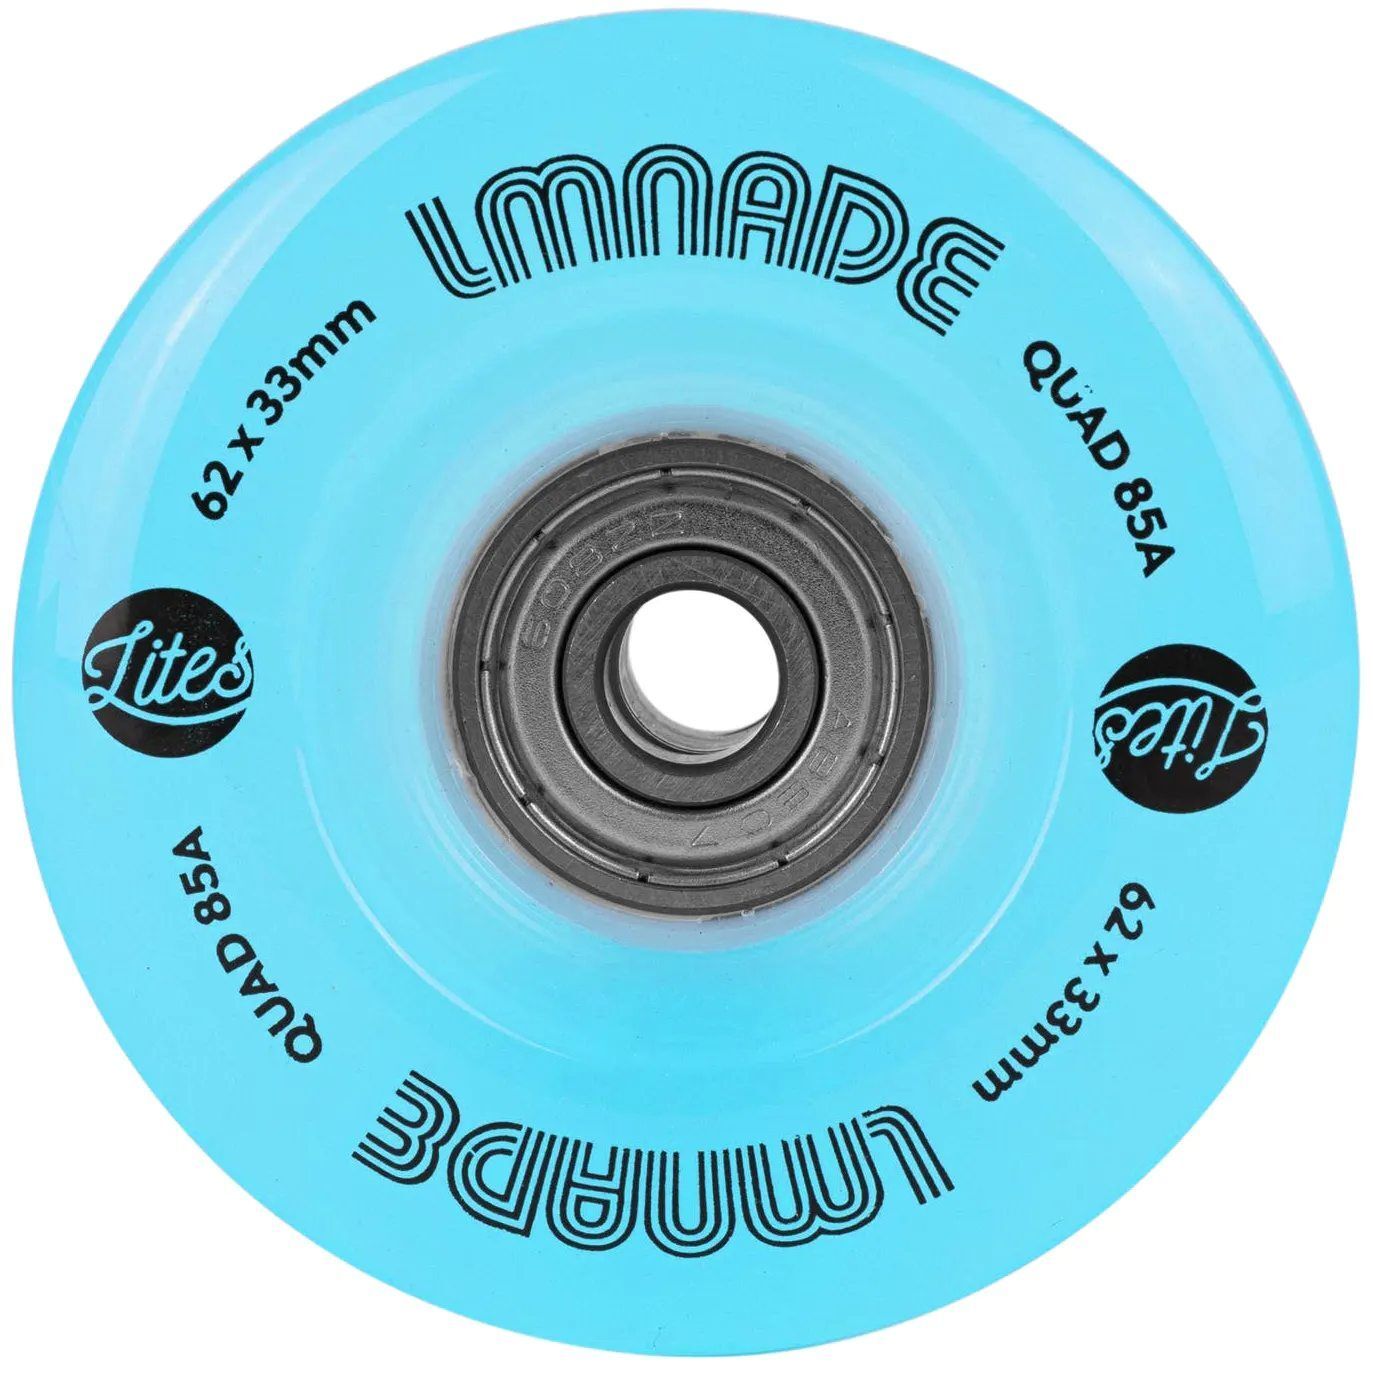 LMNADE Lites LED Light-Up 85a 62mm Quad Roller Skate Wheels Pack of 4 